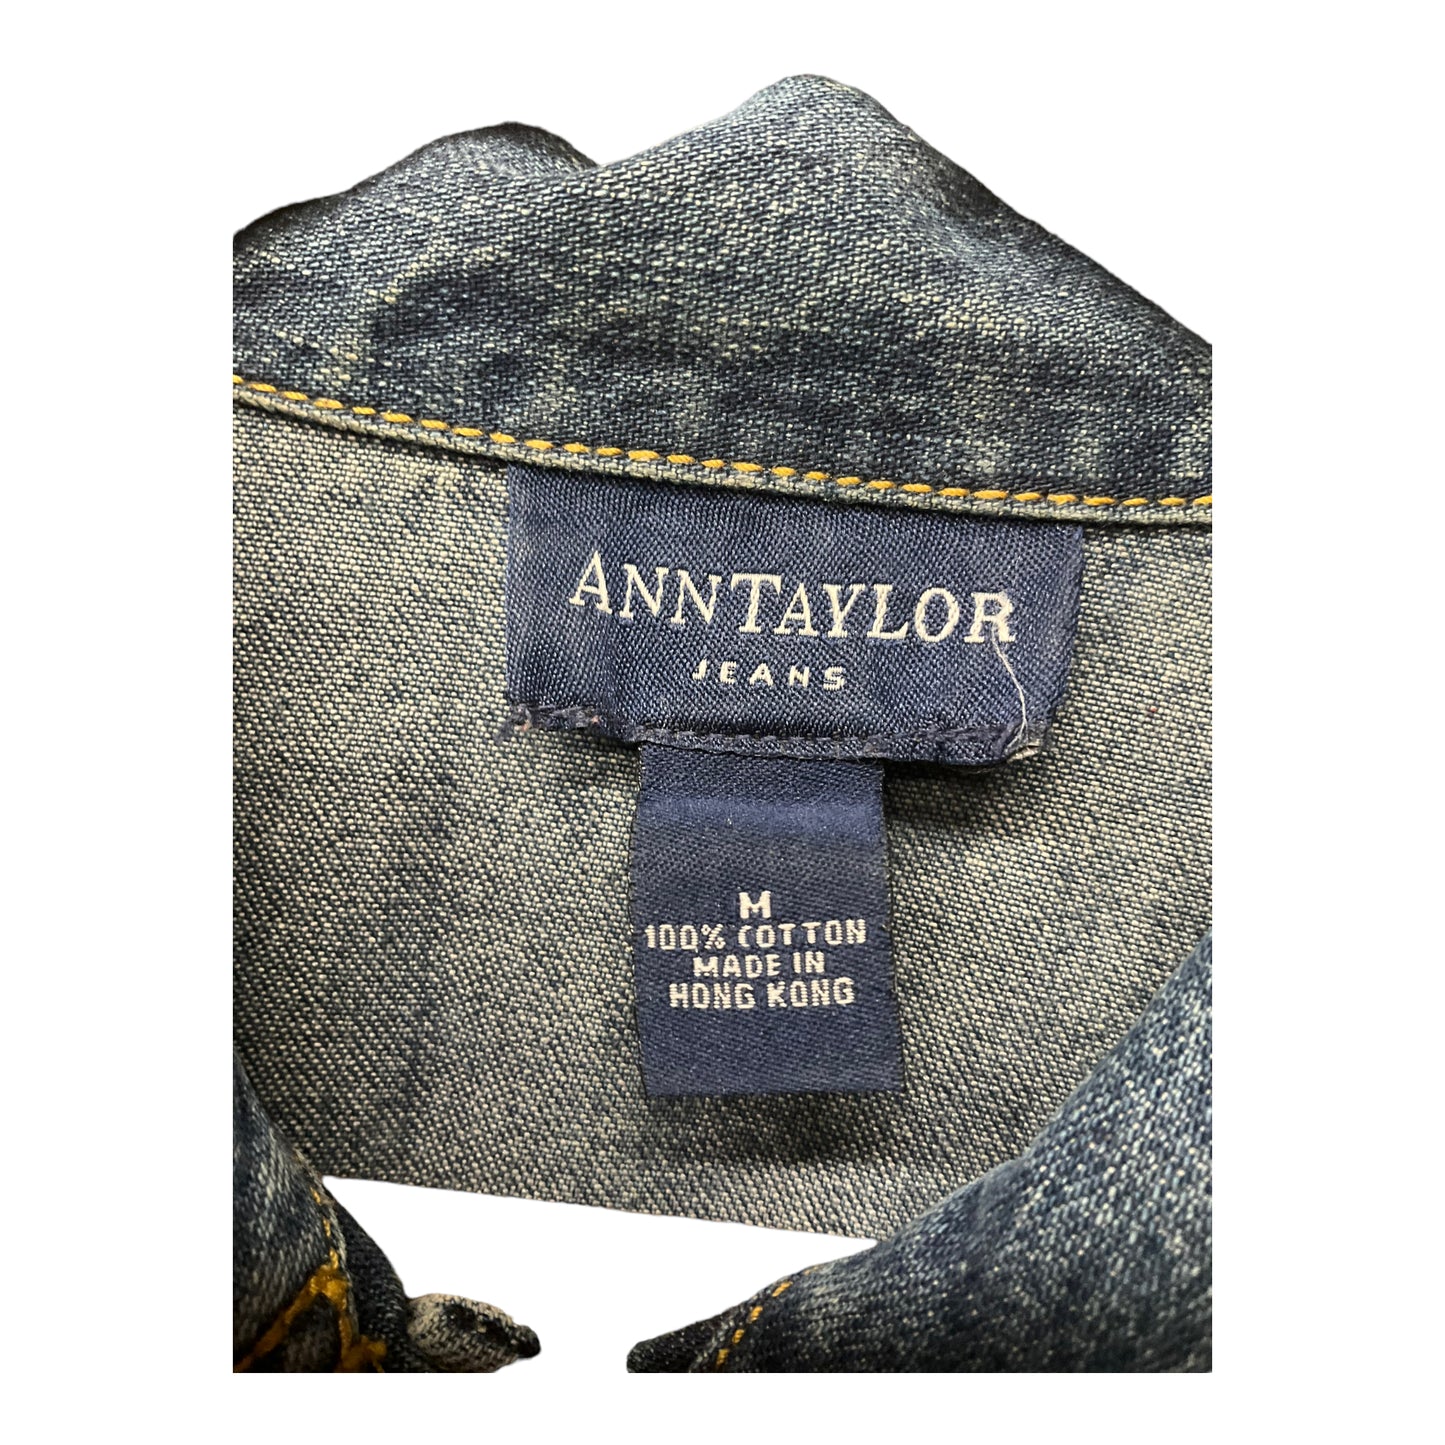 Jacket Denim By Ann Taylor  Size: M